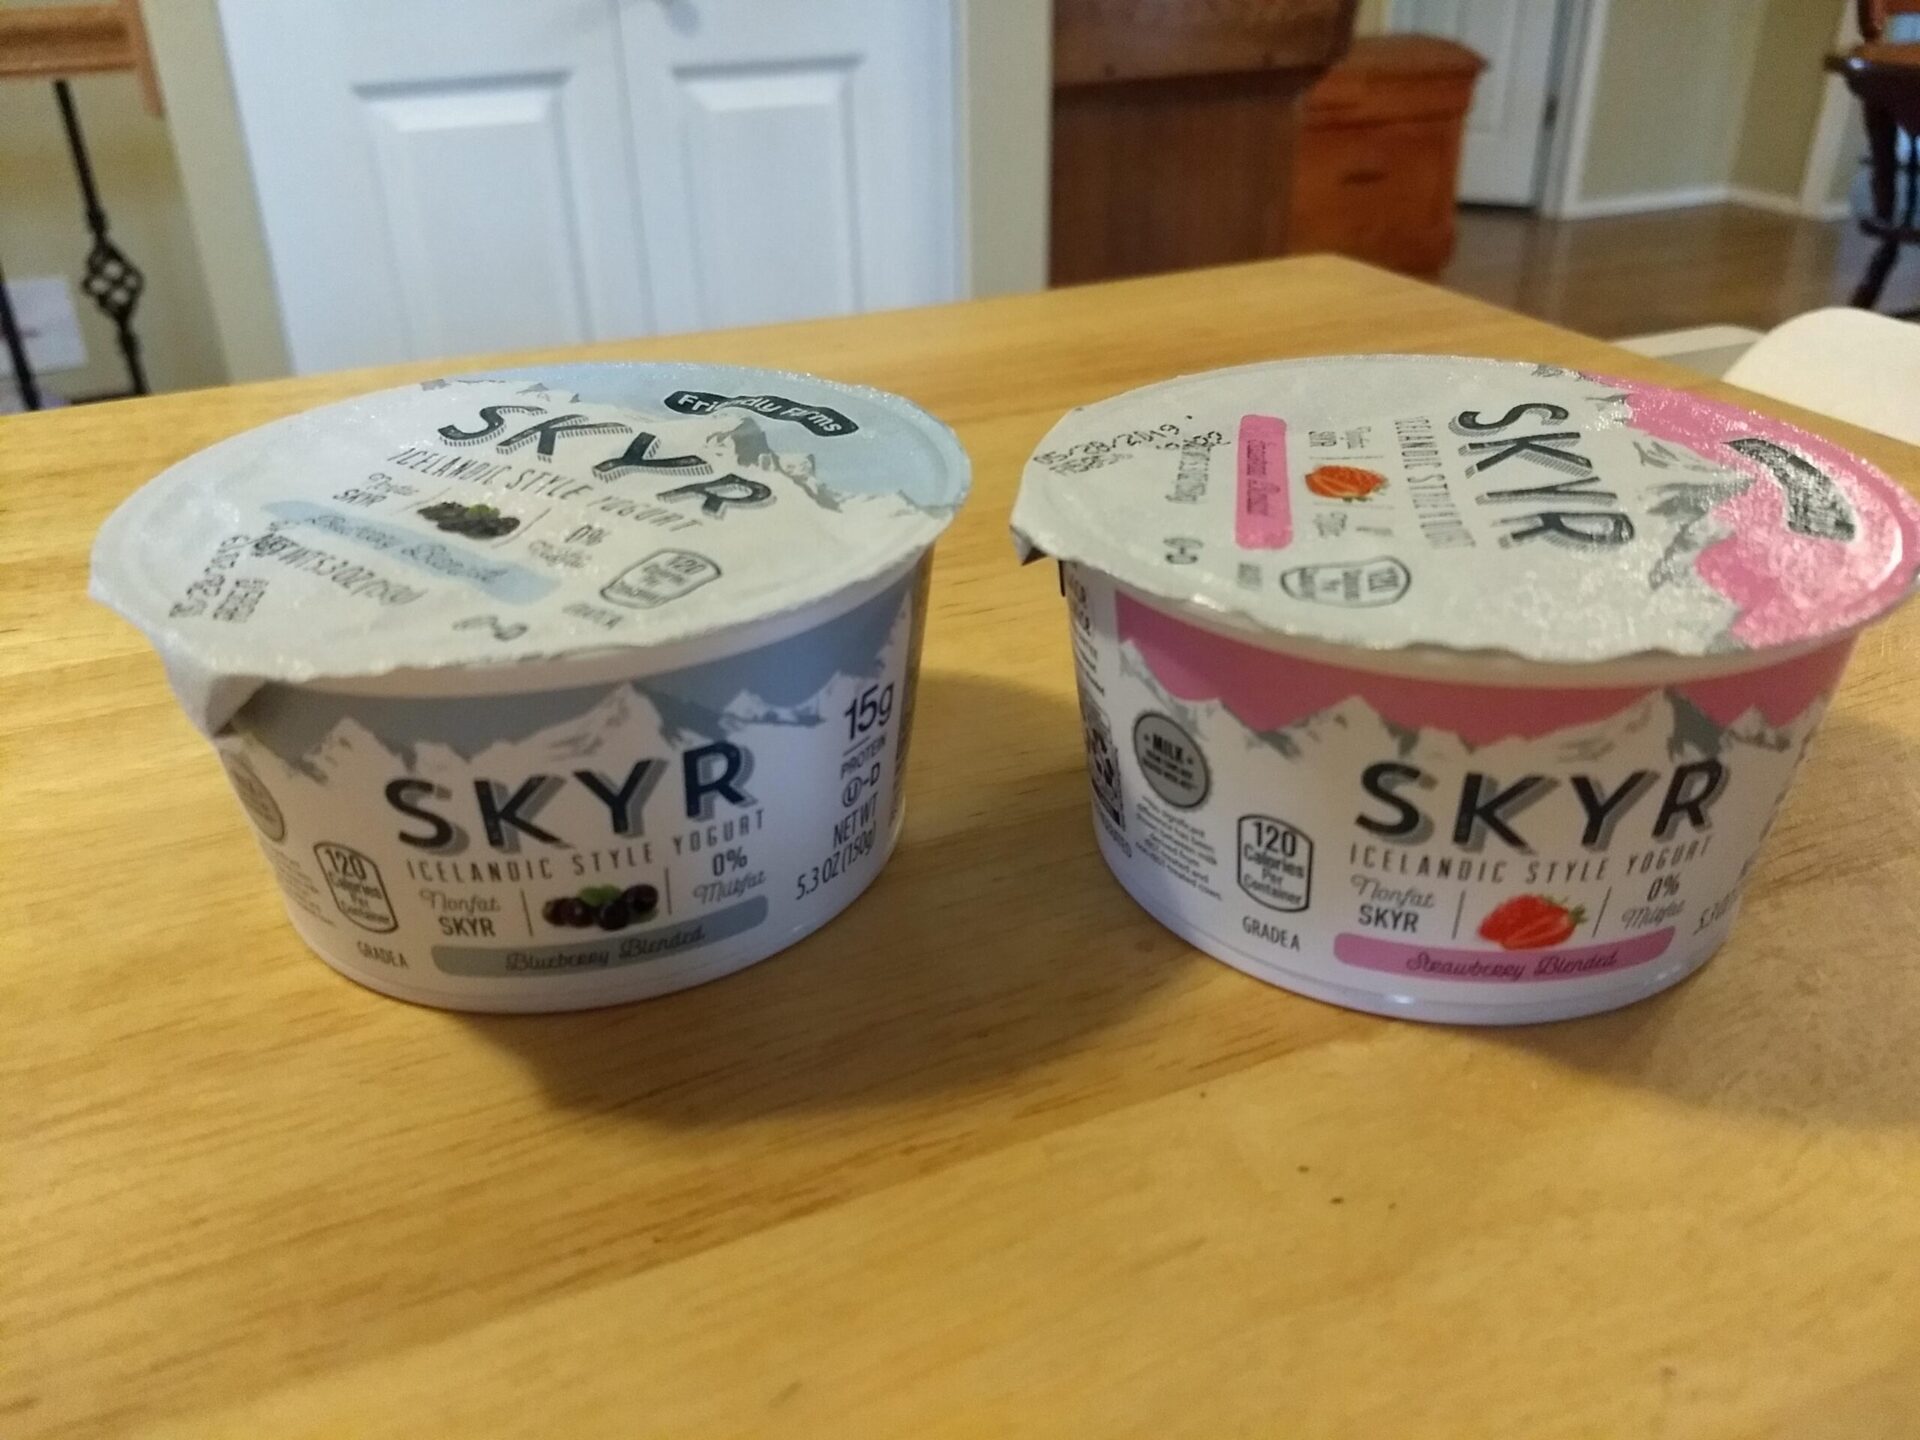 Friendly Farms Skyr Icelandic Style Yogurt | ALDI REVIEWER